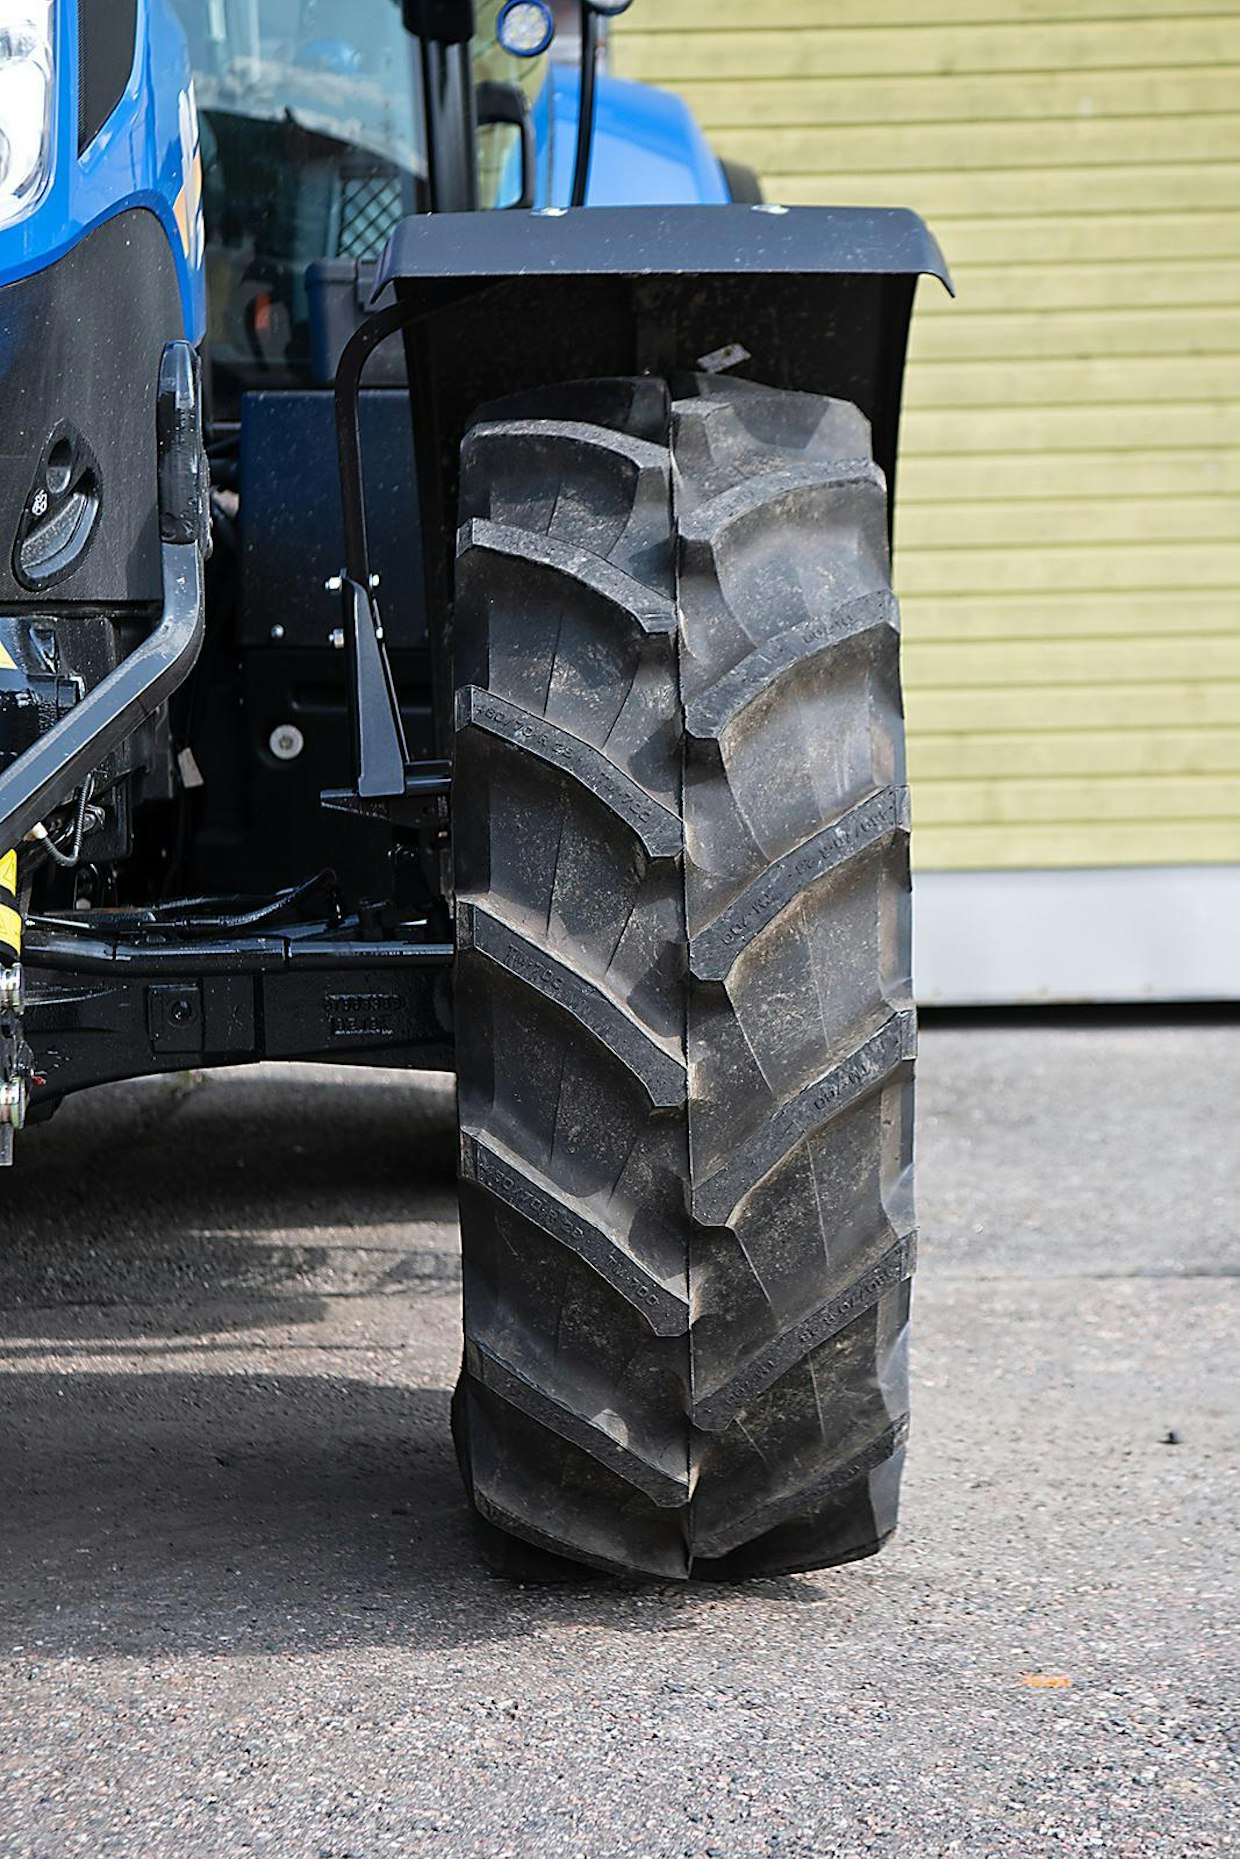 TM700 on Trelleborgin malliston ”vanha tuttu”. Rengas on uudempia malleja hieman kapeampi ja siinä on vähemmän ripoja (takarenkaissa 6 vähemmän) muihin testattuihin renkaisiin verrattuna. TM700-mallin nimi juontaa sen 70 prosentin profiilisuhteesta, mistä johtuen rengas soveltuu parhaiten pienempiin traktoreihin 180 hevosvoimaan asti. Kokovaihtoehtoja on 31 alkaen koosta 240/70R16 päättyen kokoon 620/70R42. Saatavilla on myös kaksi nopeisiin traktoreihin, kuten JCB Fastraciin suunniteltua High Speed- (HS) kokoa.